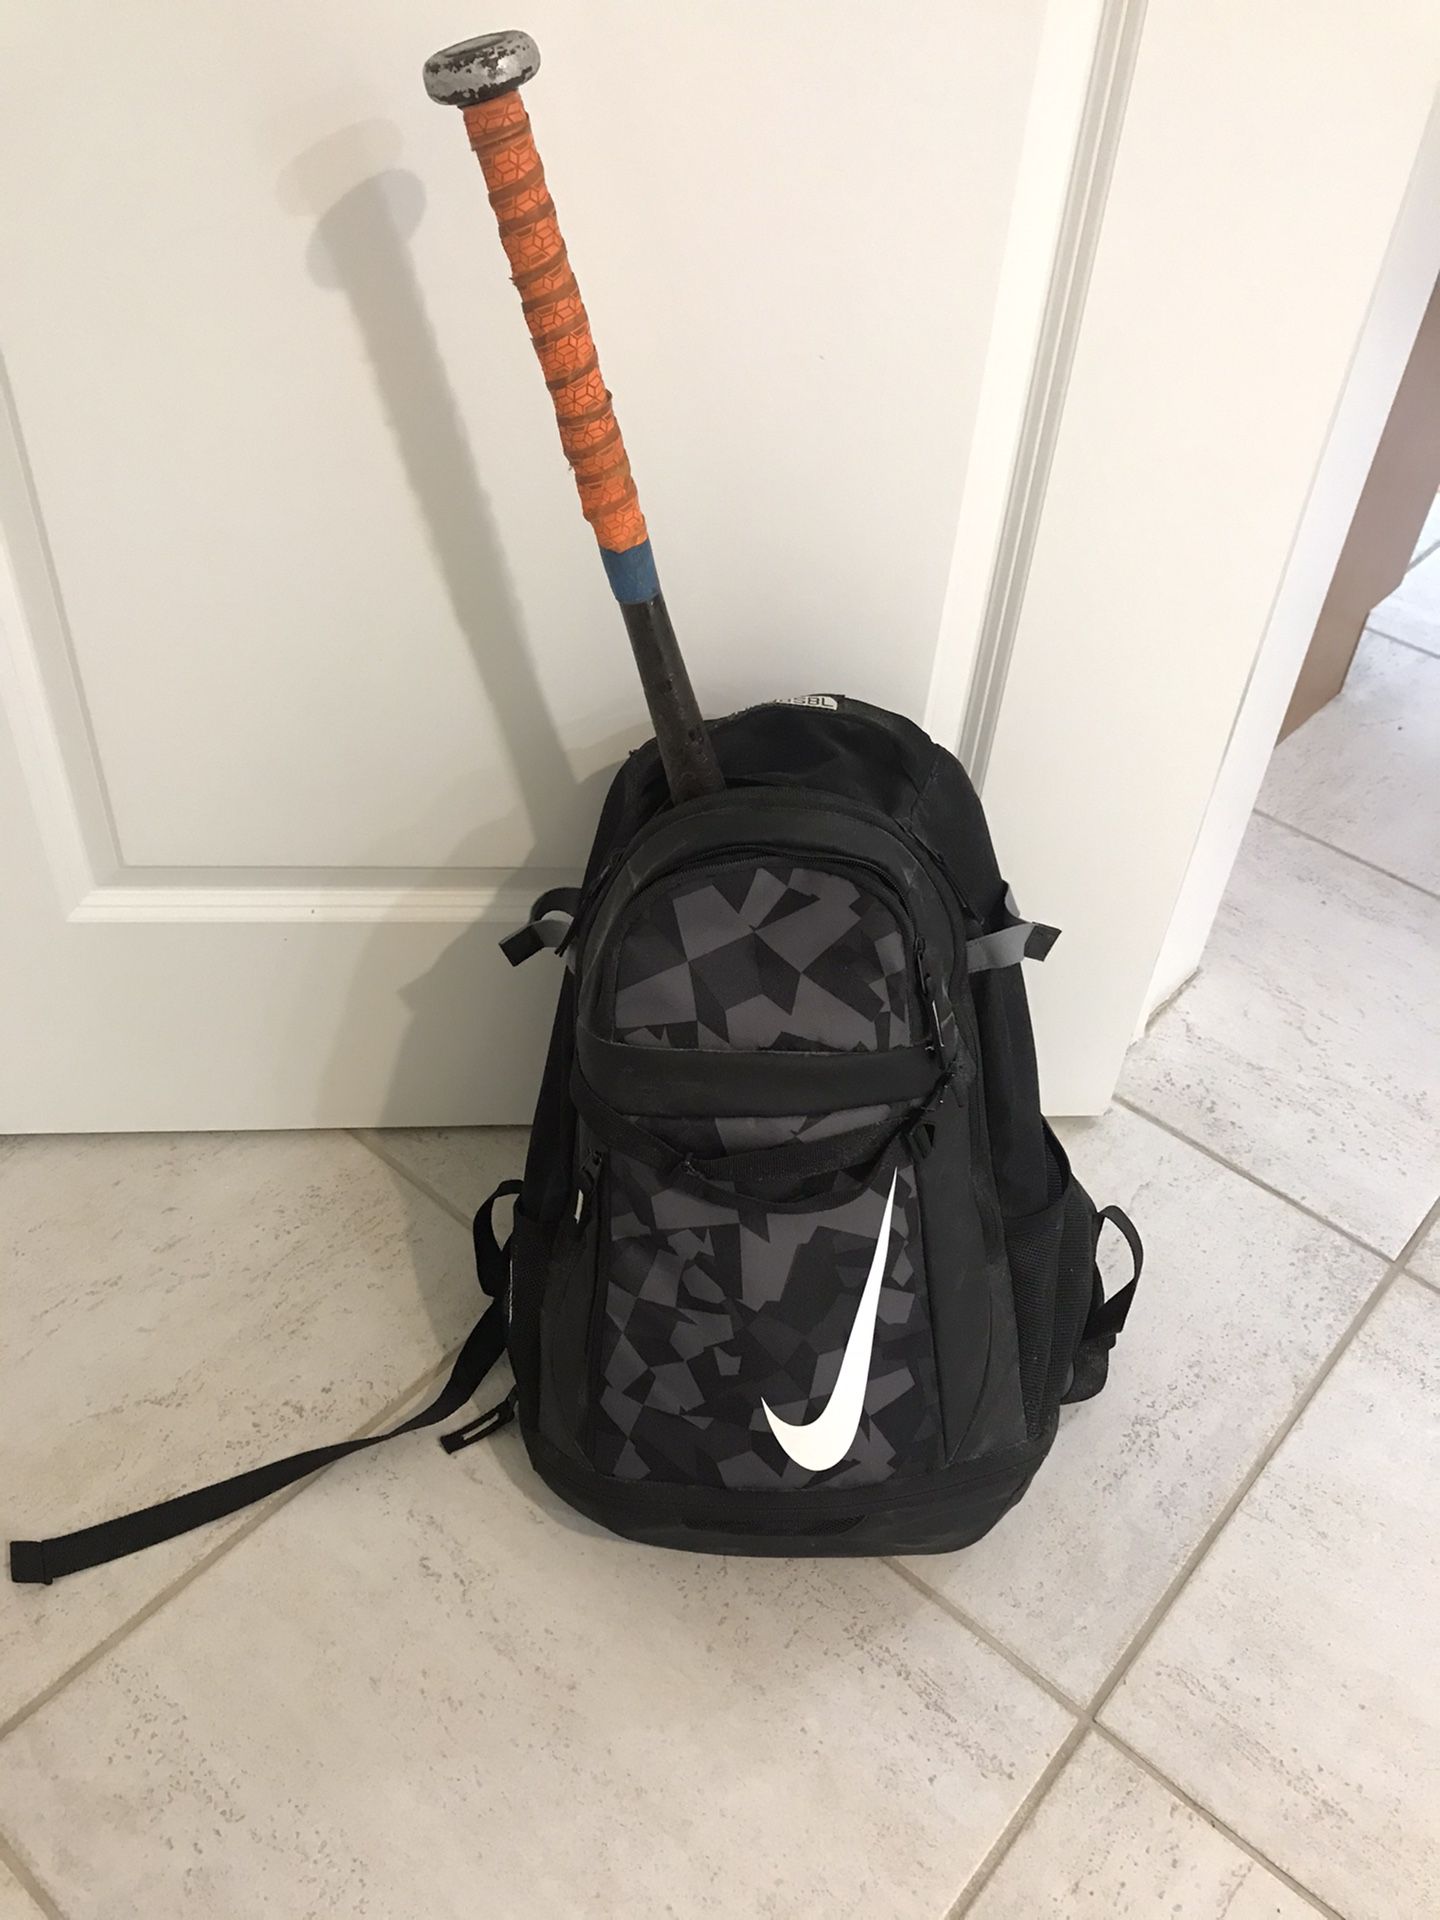 Baseball Bat, glove and Nike backpack